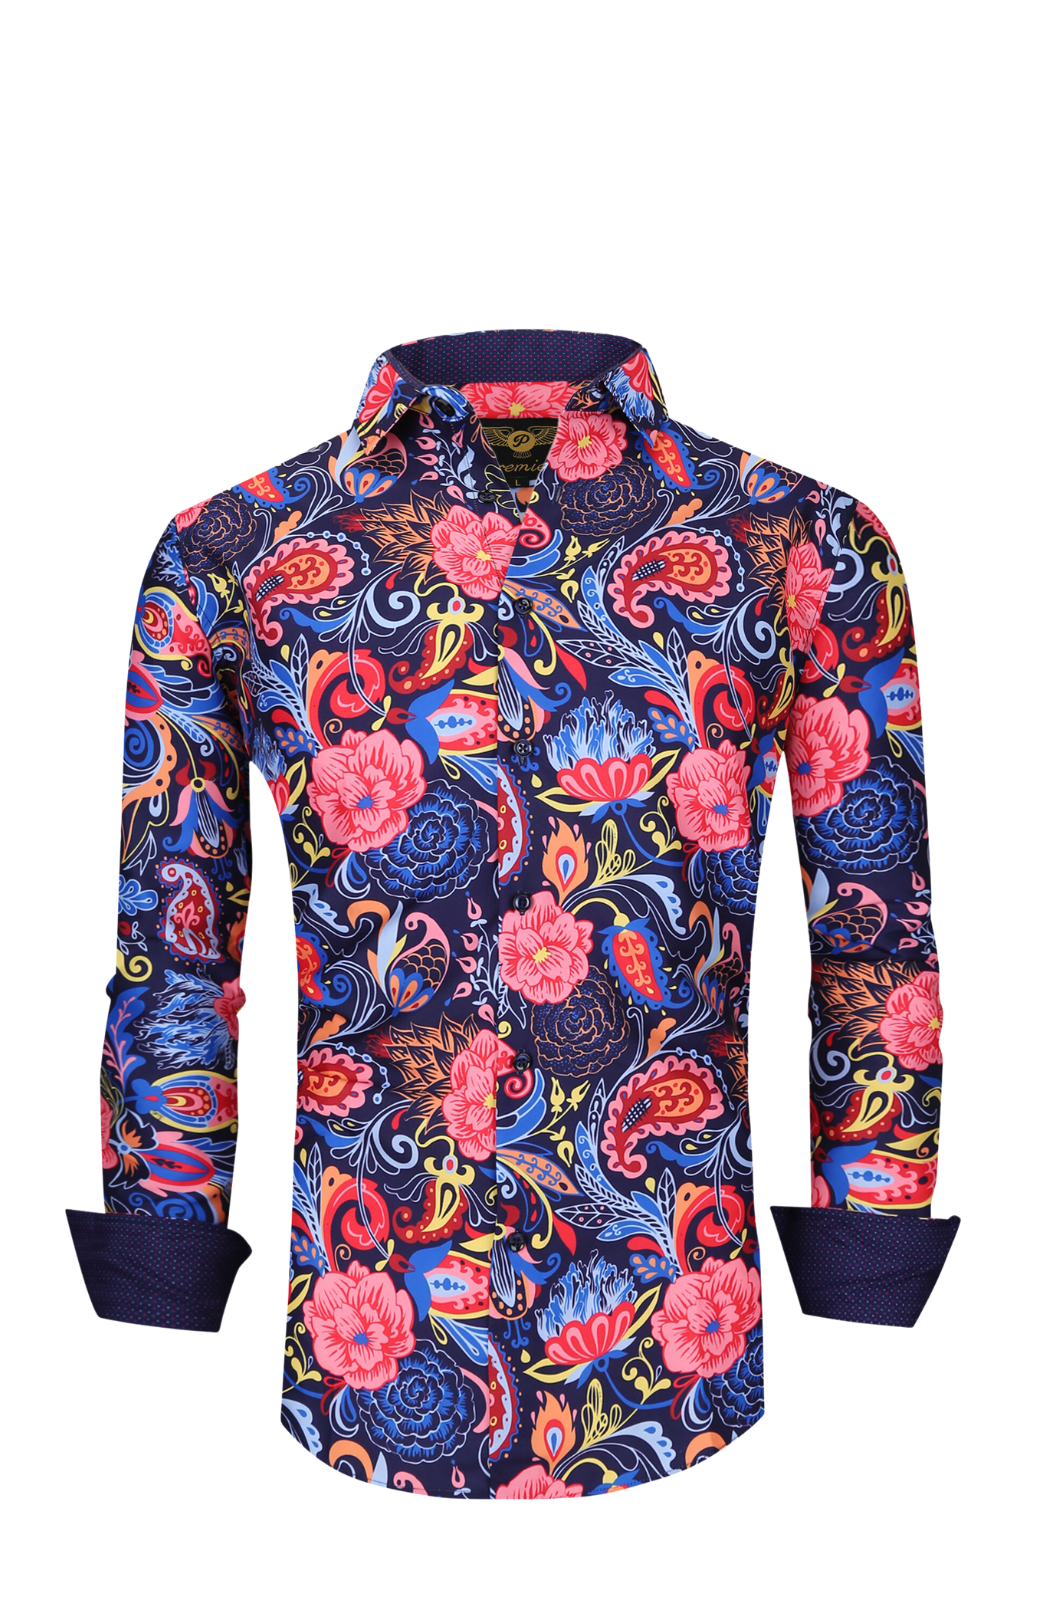 Mens PREMIERE Floral Paisley Long Sleeve Button Down Dress Shirt Multicolor